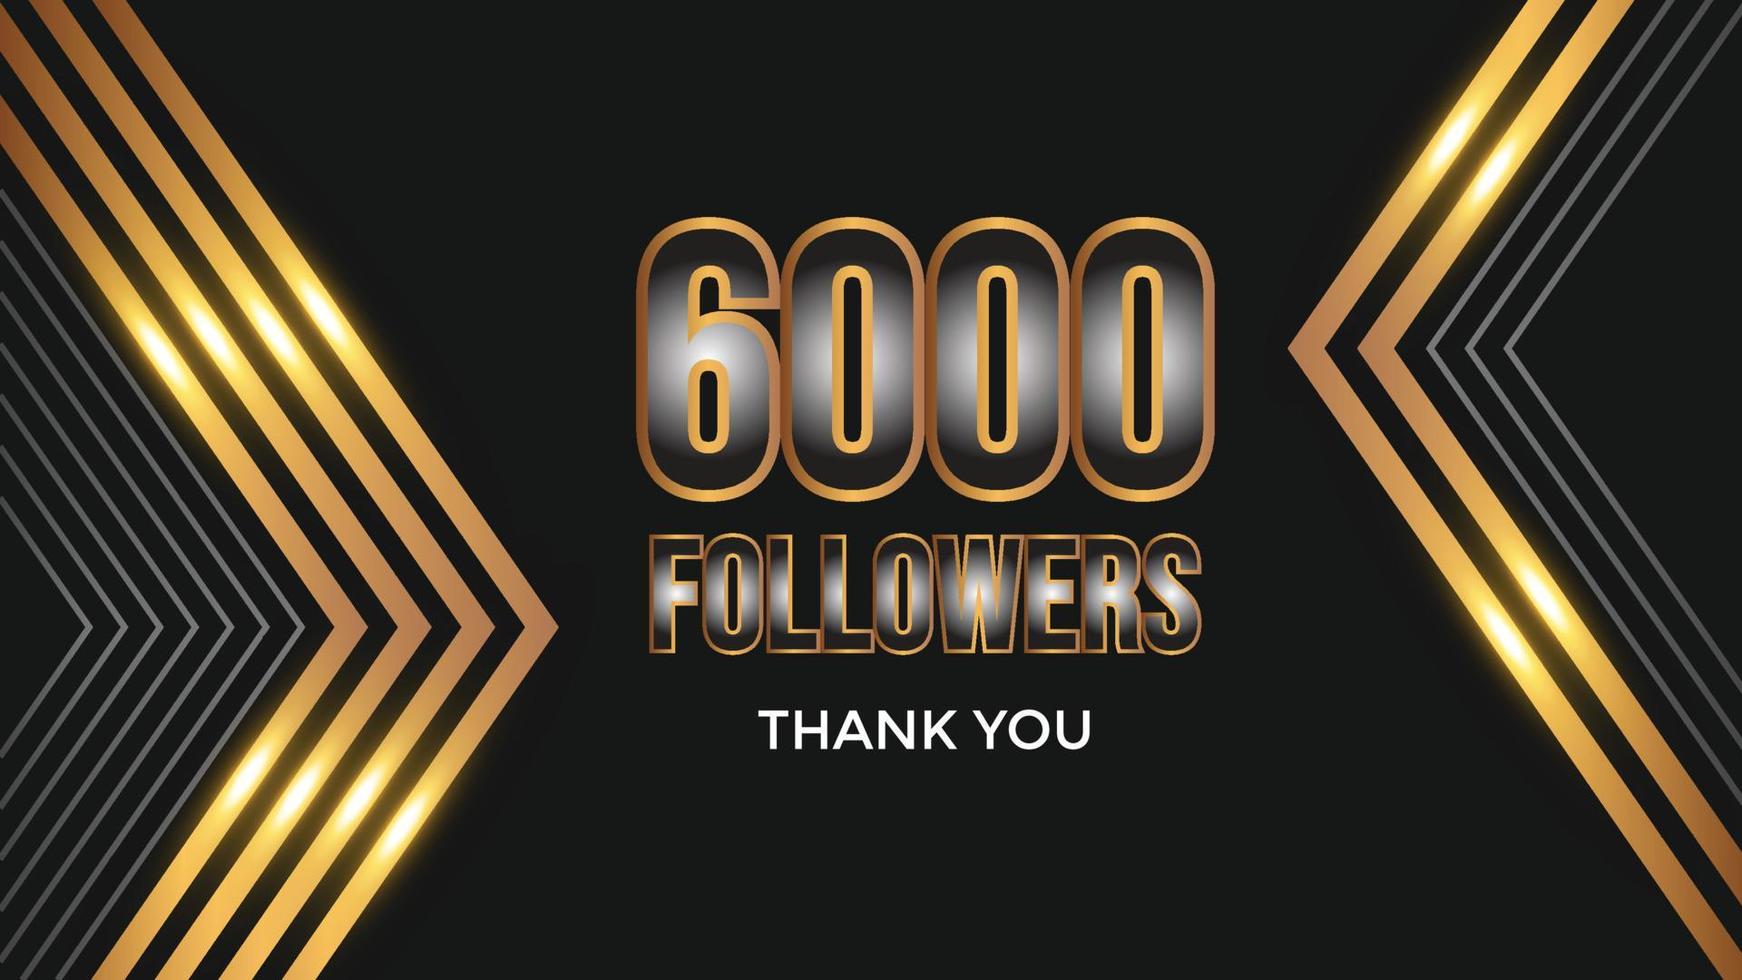 Benutzer danke feiern von 6000 Abonnenten und Anhängern. 6k Follower danke vektor